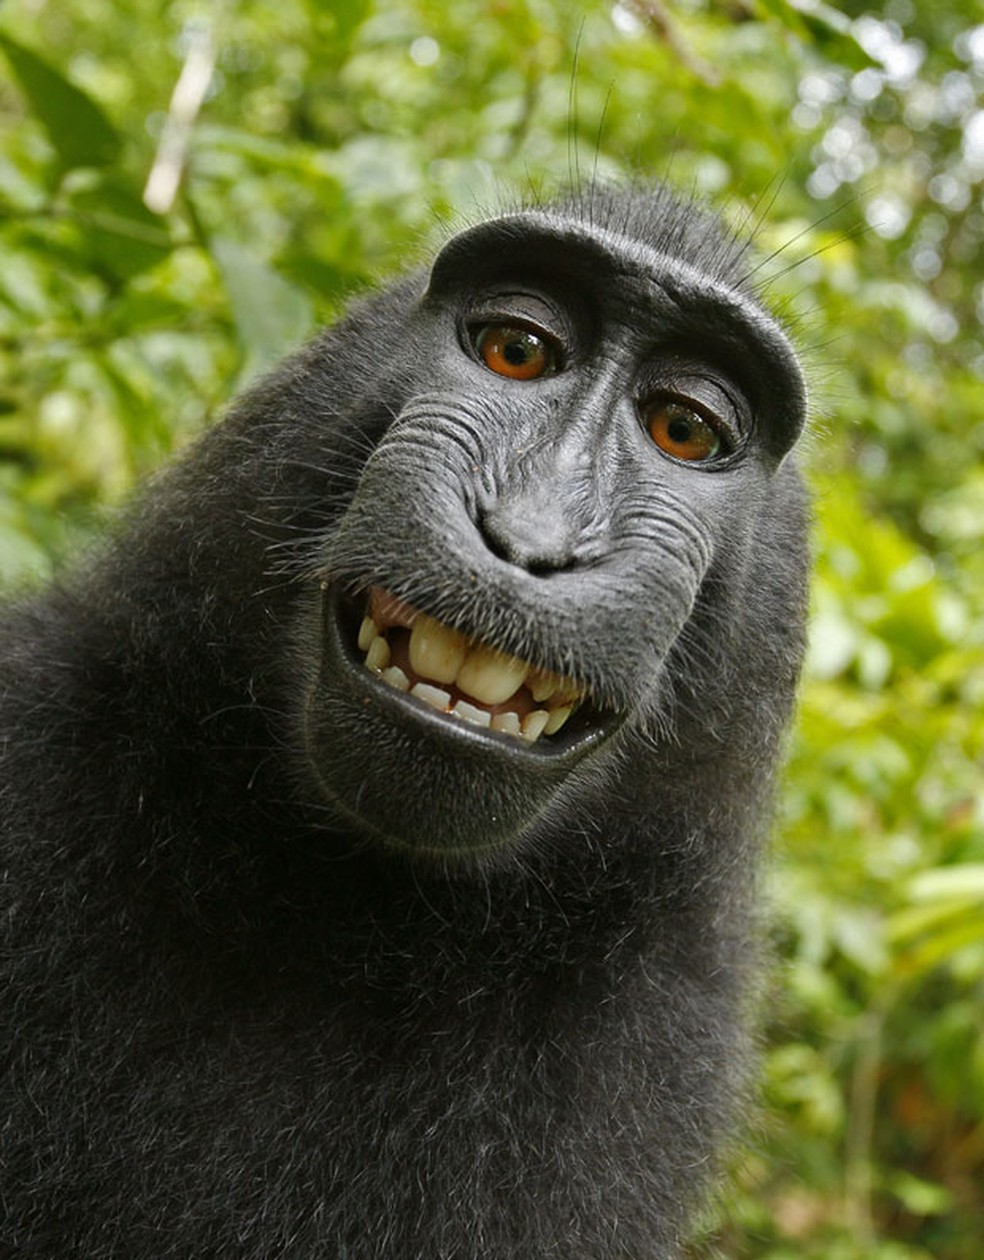 Em julho de 2011, um fotÃ³grafo se surpreendeu com as imagens feitas por um macaco da espÃ©cie Macaca nigra, que roubou sua cÃ¢mera e acabou fazendo um 'sorridente' autorretrato em um pequeno parque nacional na ilha de Sulawesi, na IndonÃ©sia. (Foto: Wild Monkey/David Slater/Caters News)